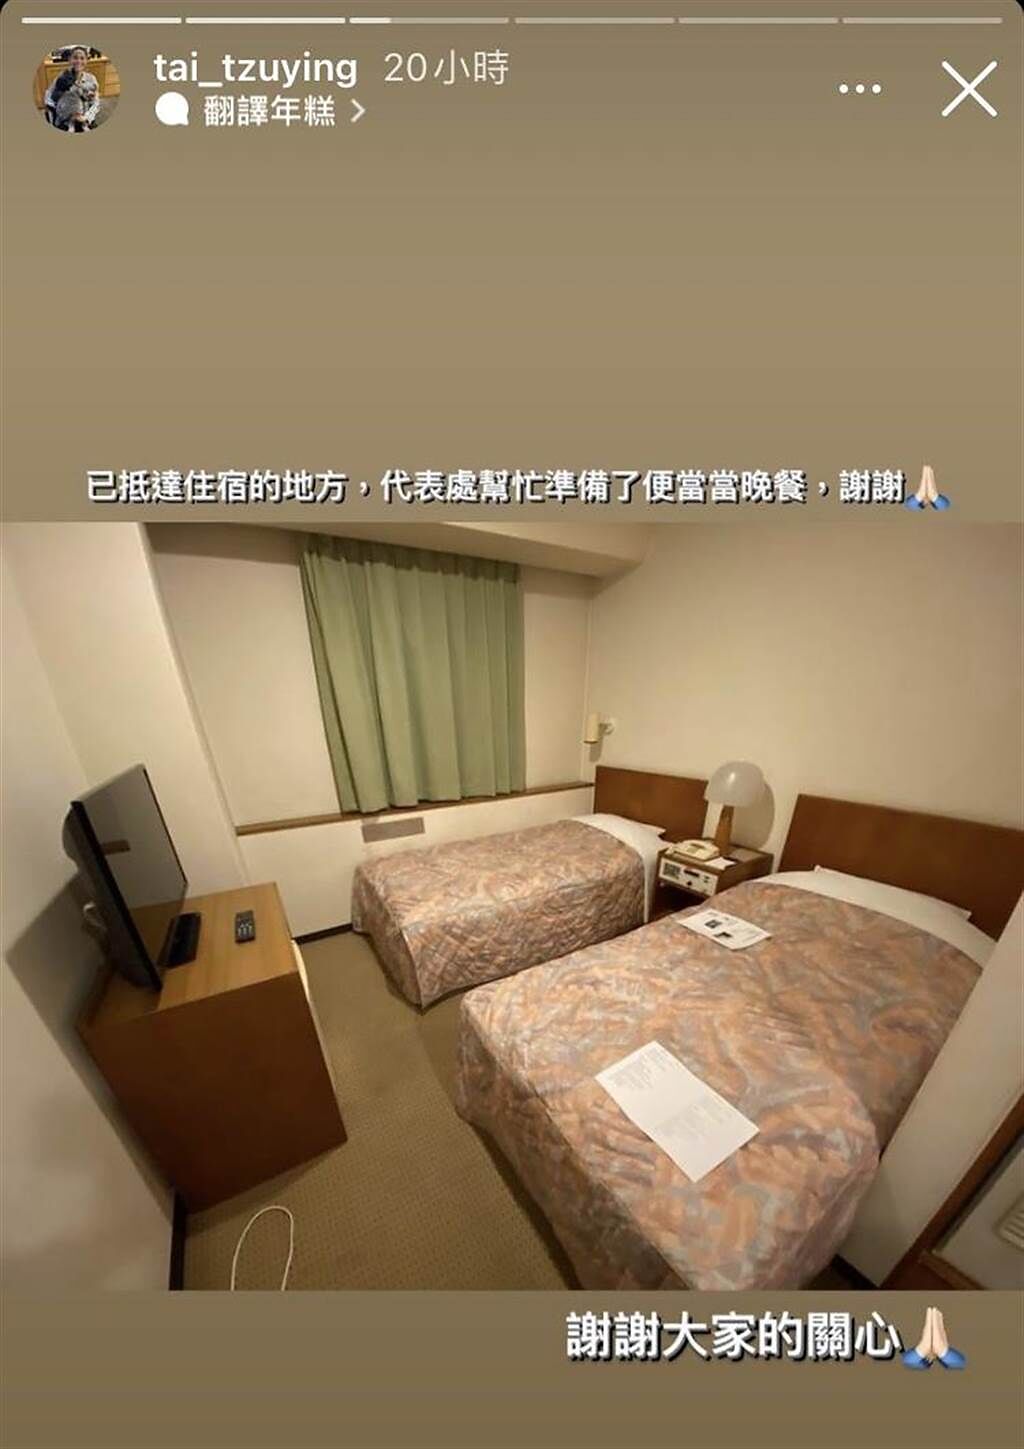 東奧國手居住的飯店，都引起台灣民眾的關注。(圖/羽球球后戴資穎IG)